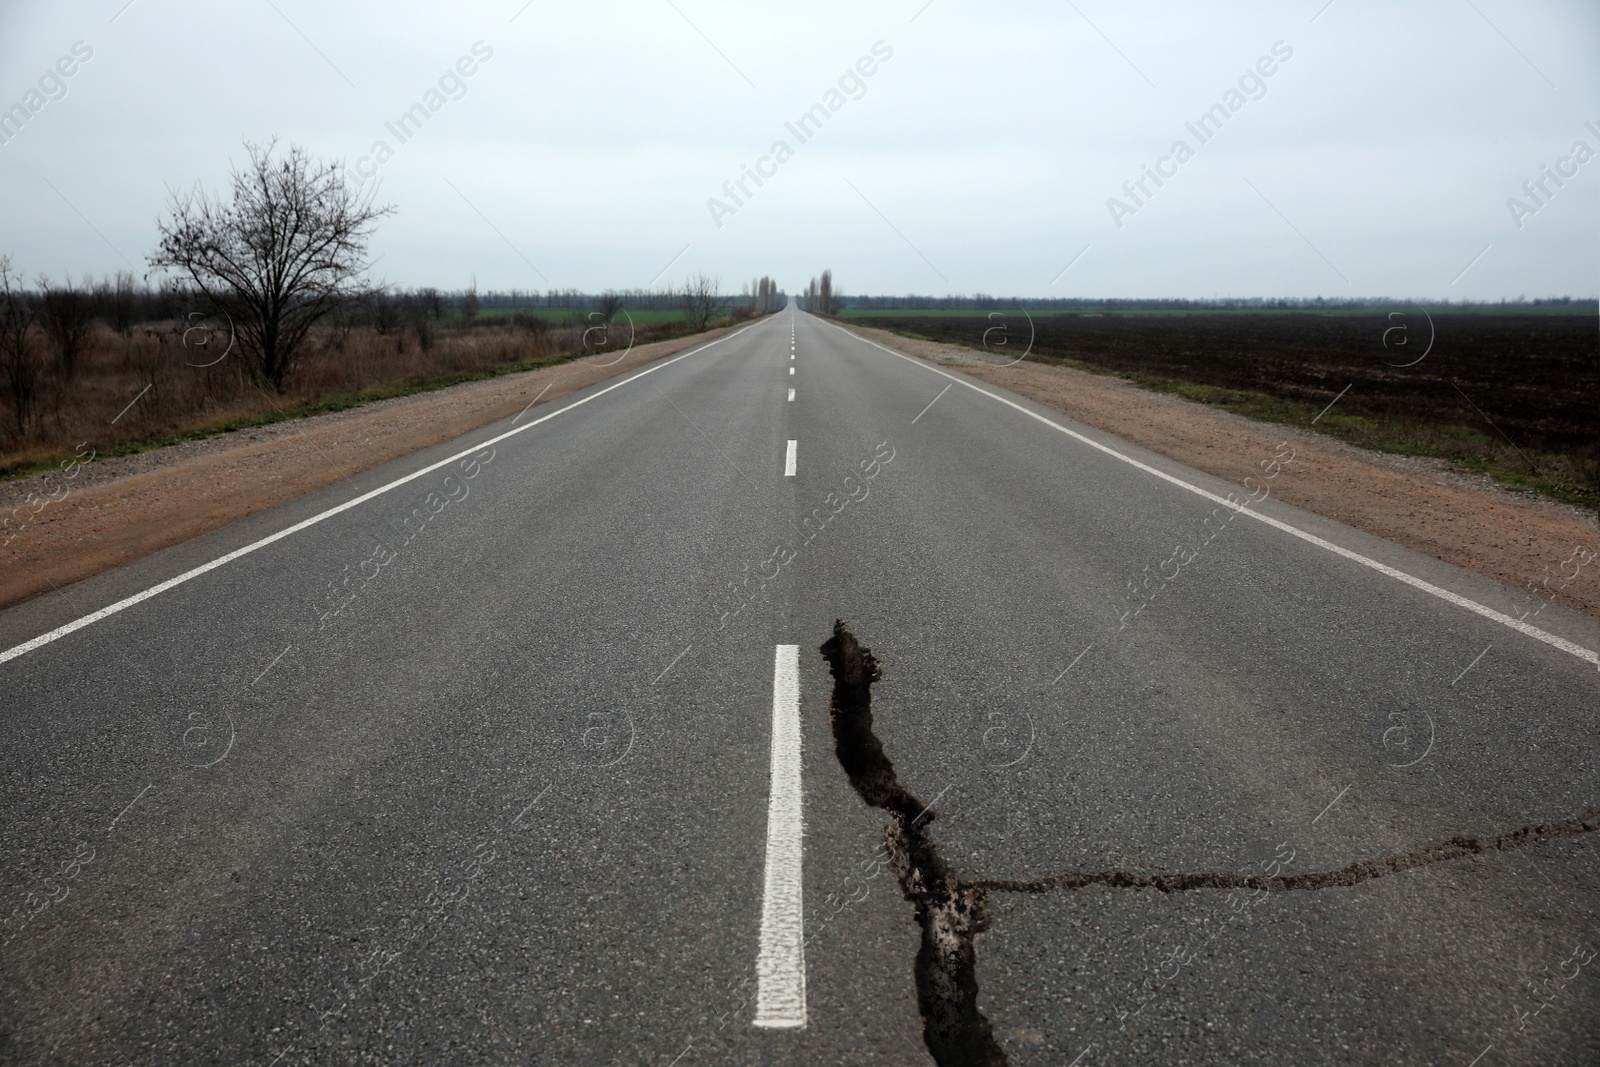 Image of Large crack on asphalt road after earthquake